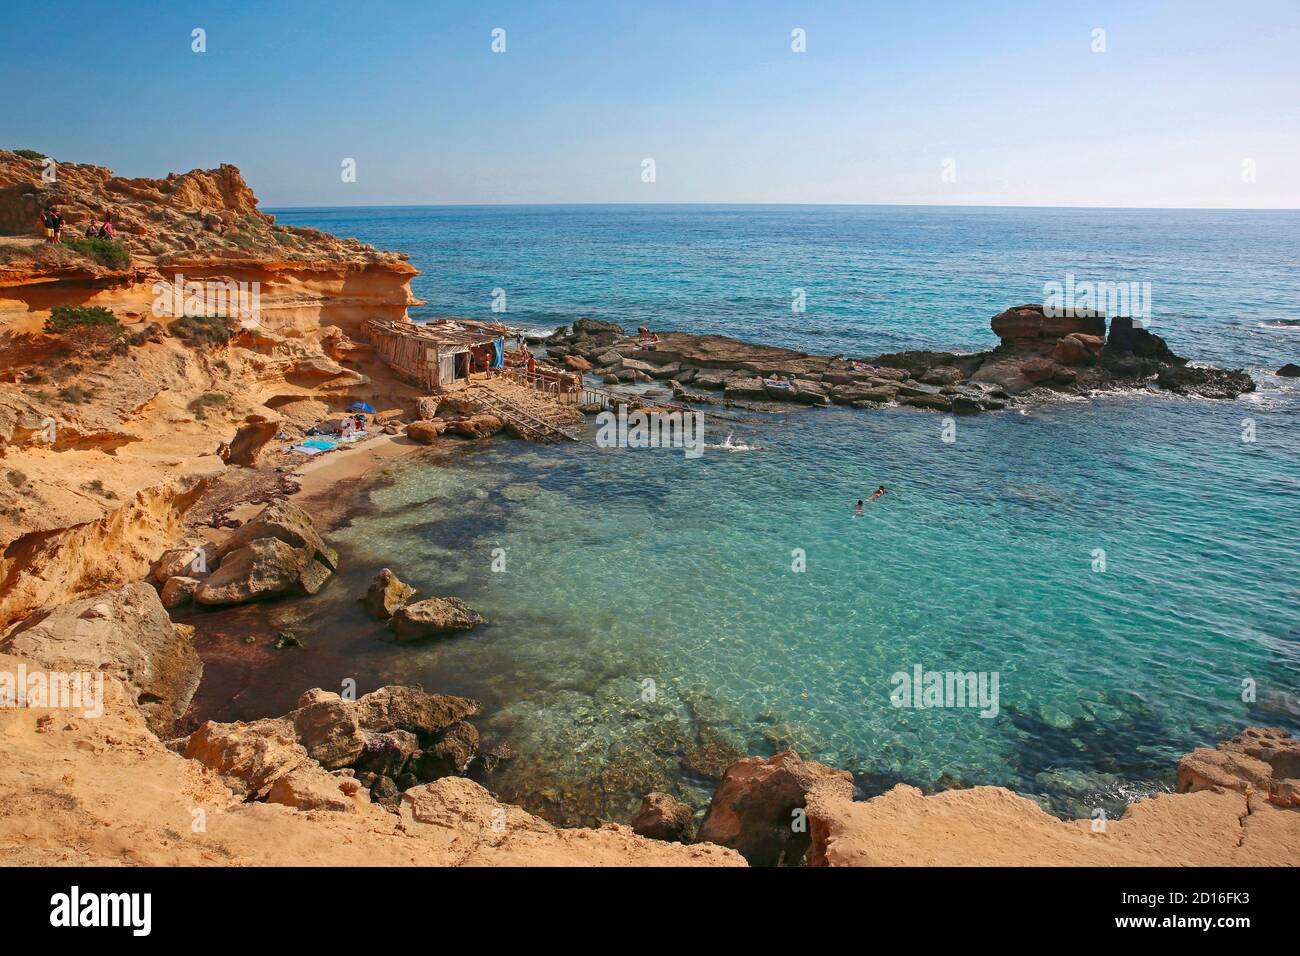 Spagna, Isole Baleari, formentera, calo des mort, visitatori estivi adagiati su una baia fiancheggiata da scogliere rosse e rocce in un forte di acque turchesi Foto Stock